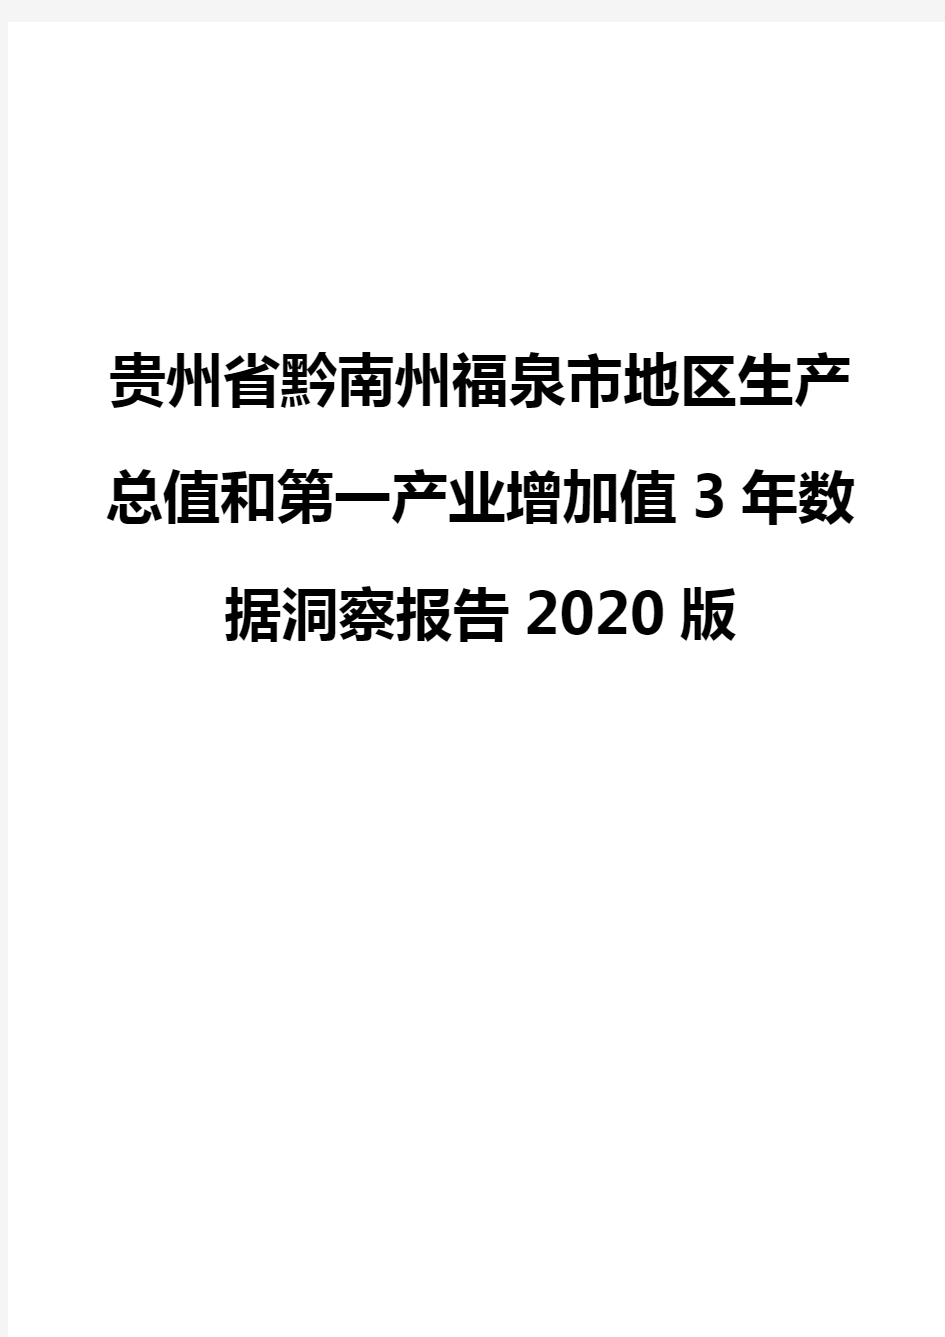 贵州省黔南州福泉市地区生产总值和第一产业增加值3年数据洞察报告2020版